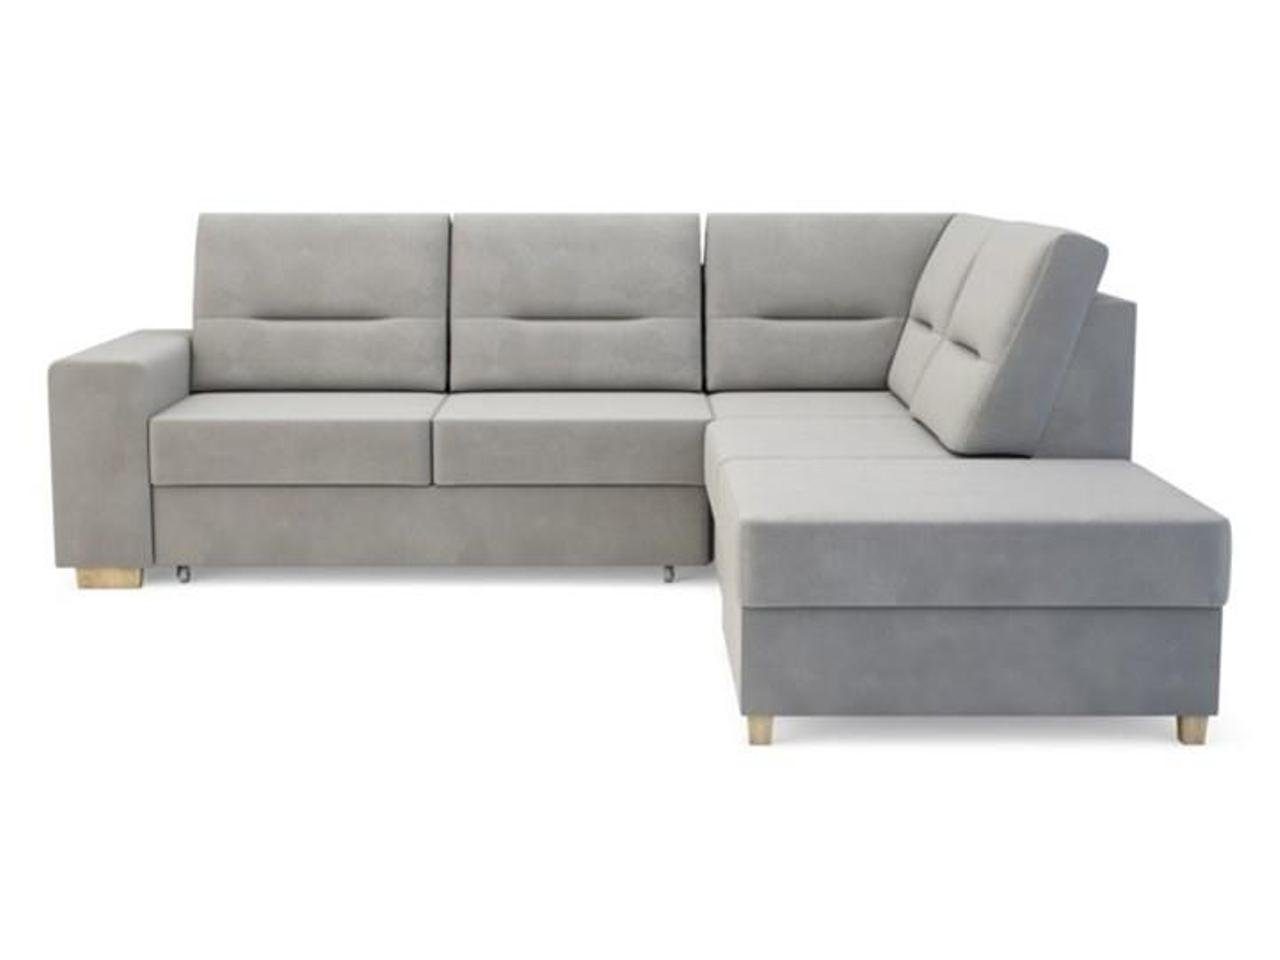 JVmoebel Sofa Design Ecksofa L-form Bettfunktion Couch Leder Textil Sofa, Made in Europe